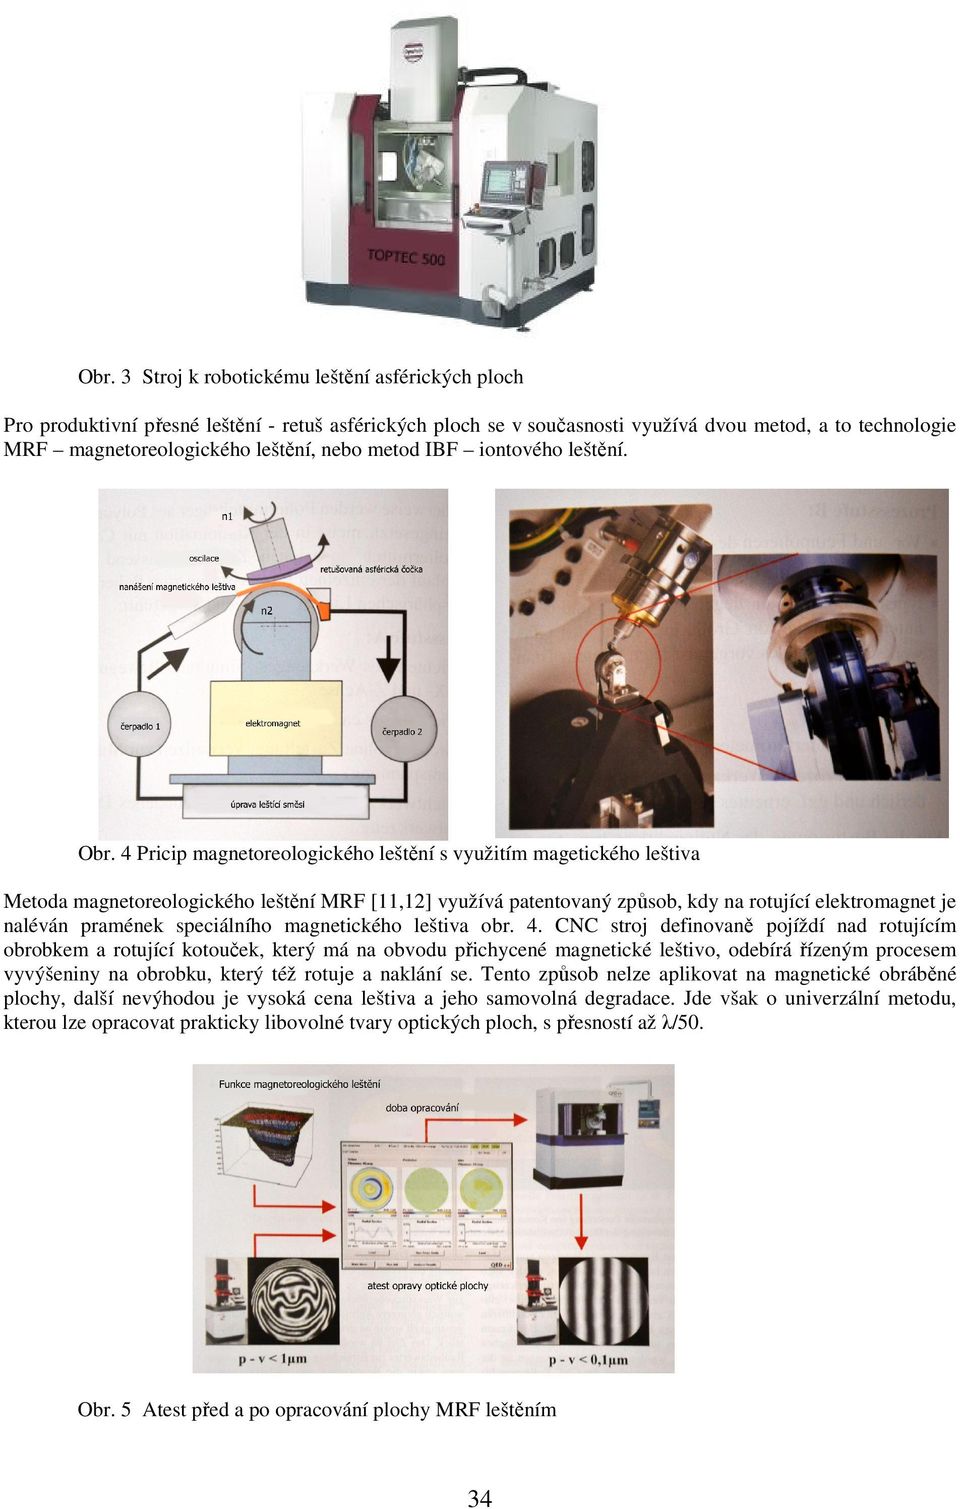 4 Pricip magnetoreologického leštění s využitím magetického leštiva Metoda magnetoreologického leštění MRF [11,12] využívá patentovaný způsob, kdy na rotující elektromagnet je naléván pramének